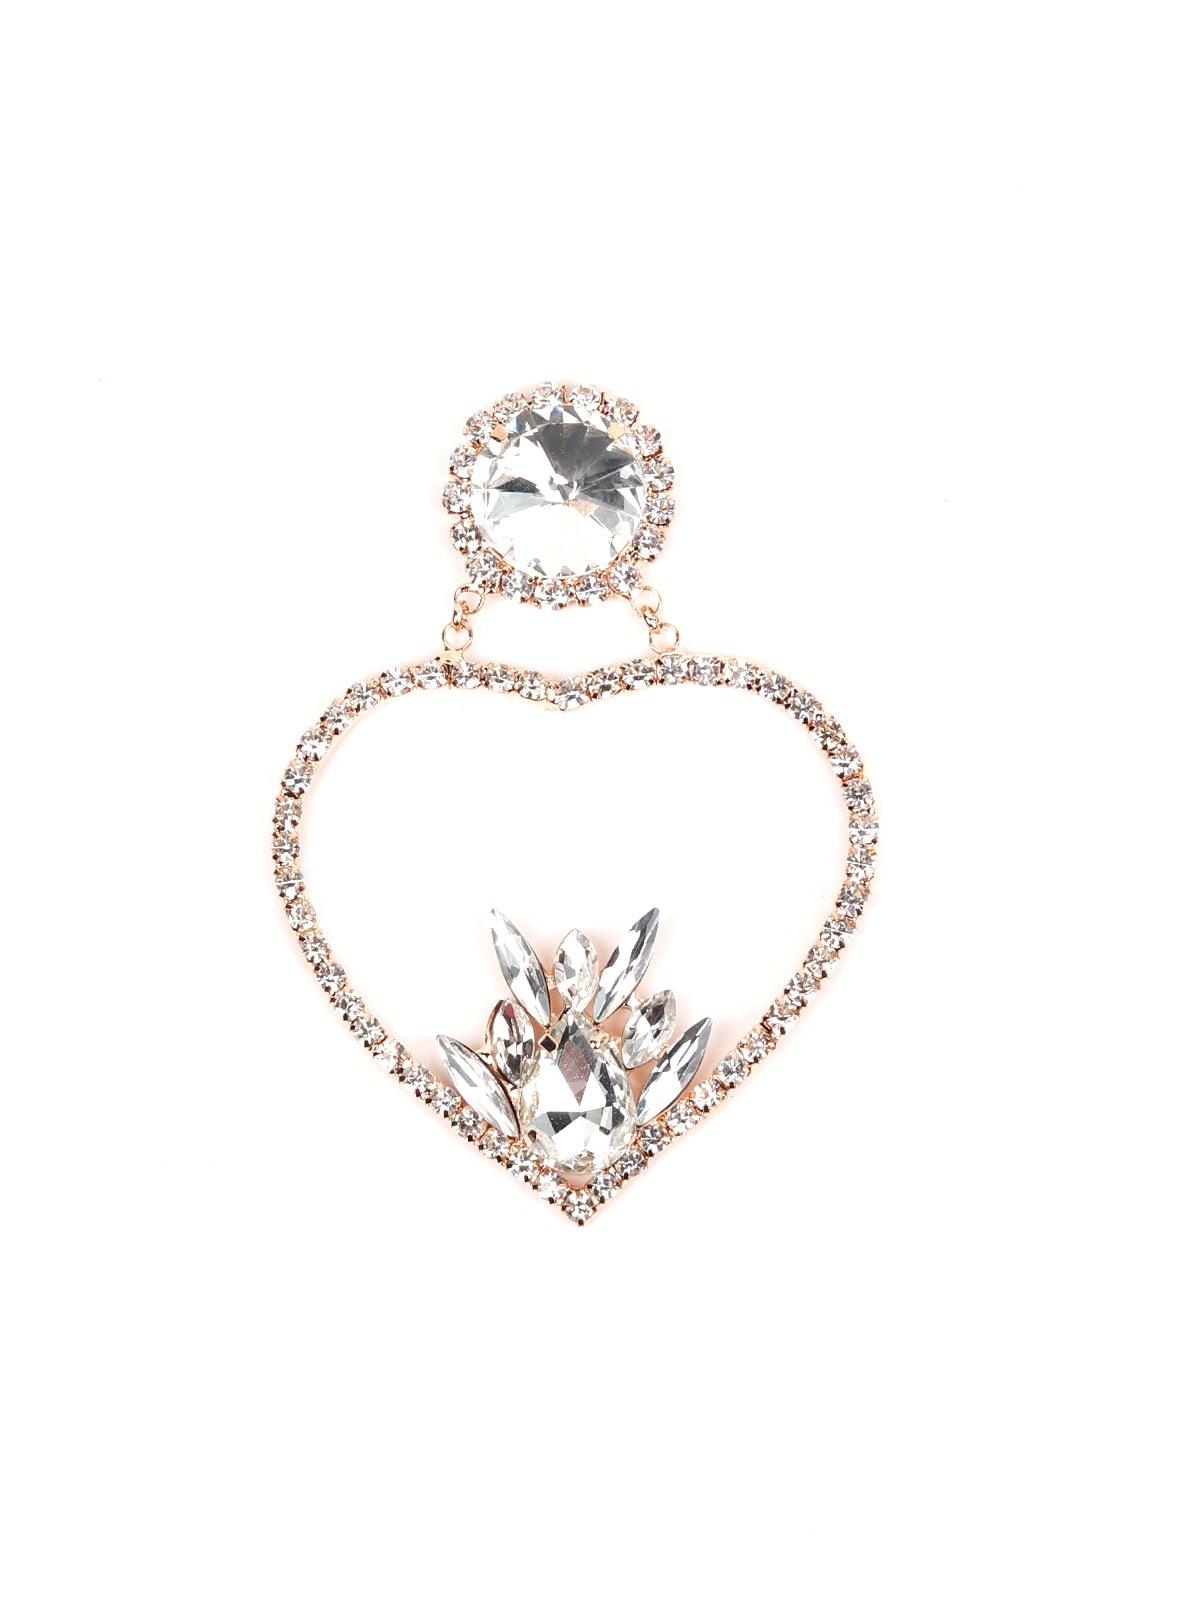 Silhouette Of Heart Shape Crystal Earrings - Odette